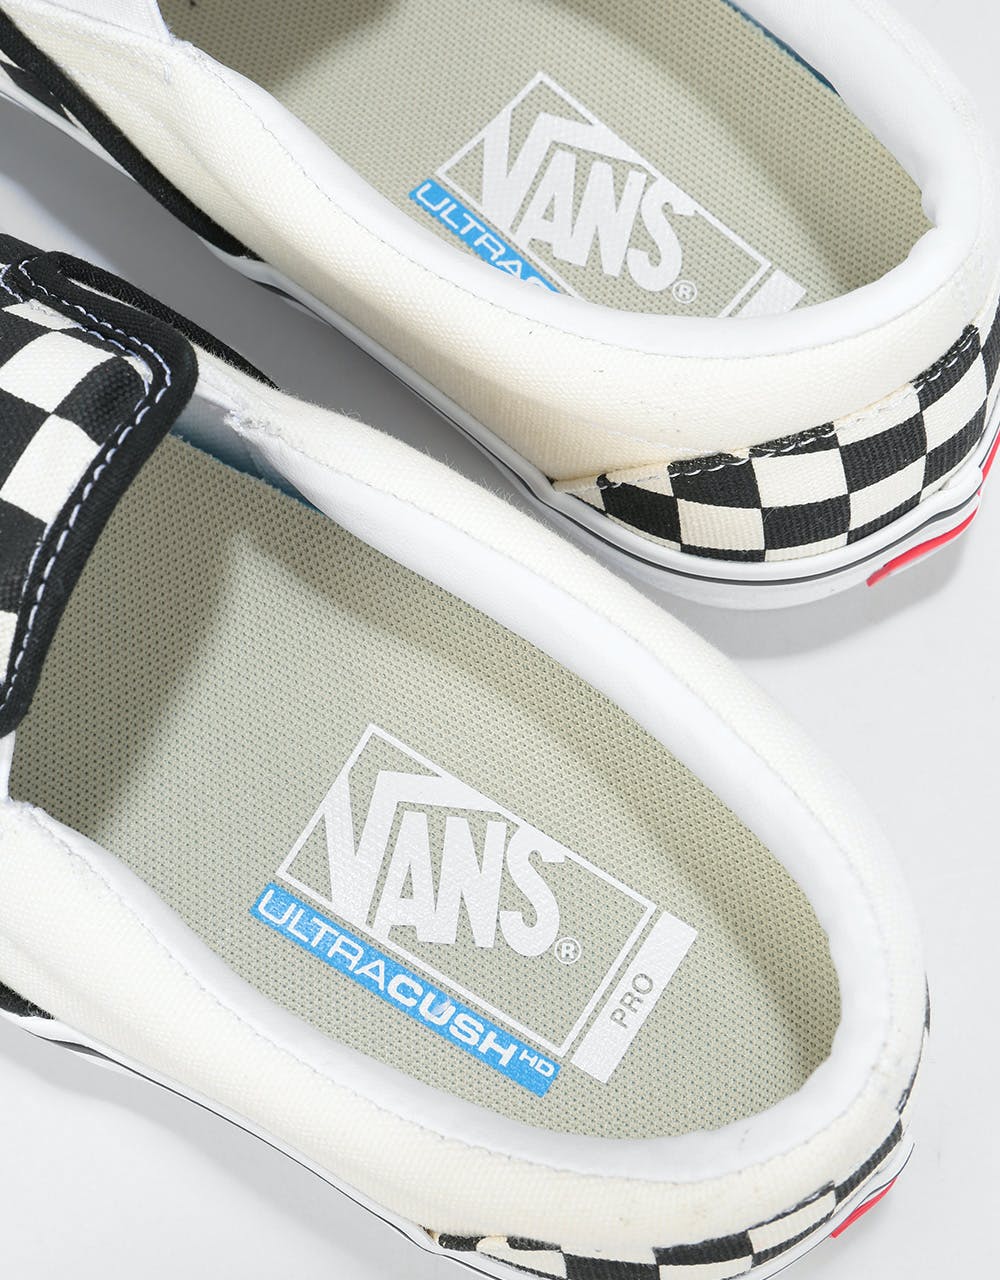 Vans Slip-On Pro Skate Shoes - (Checkerboard) Black/White